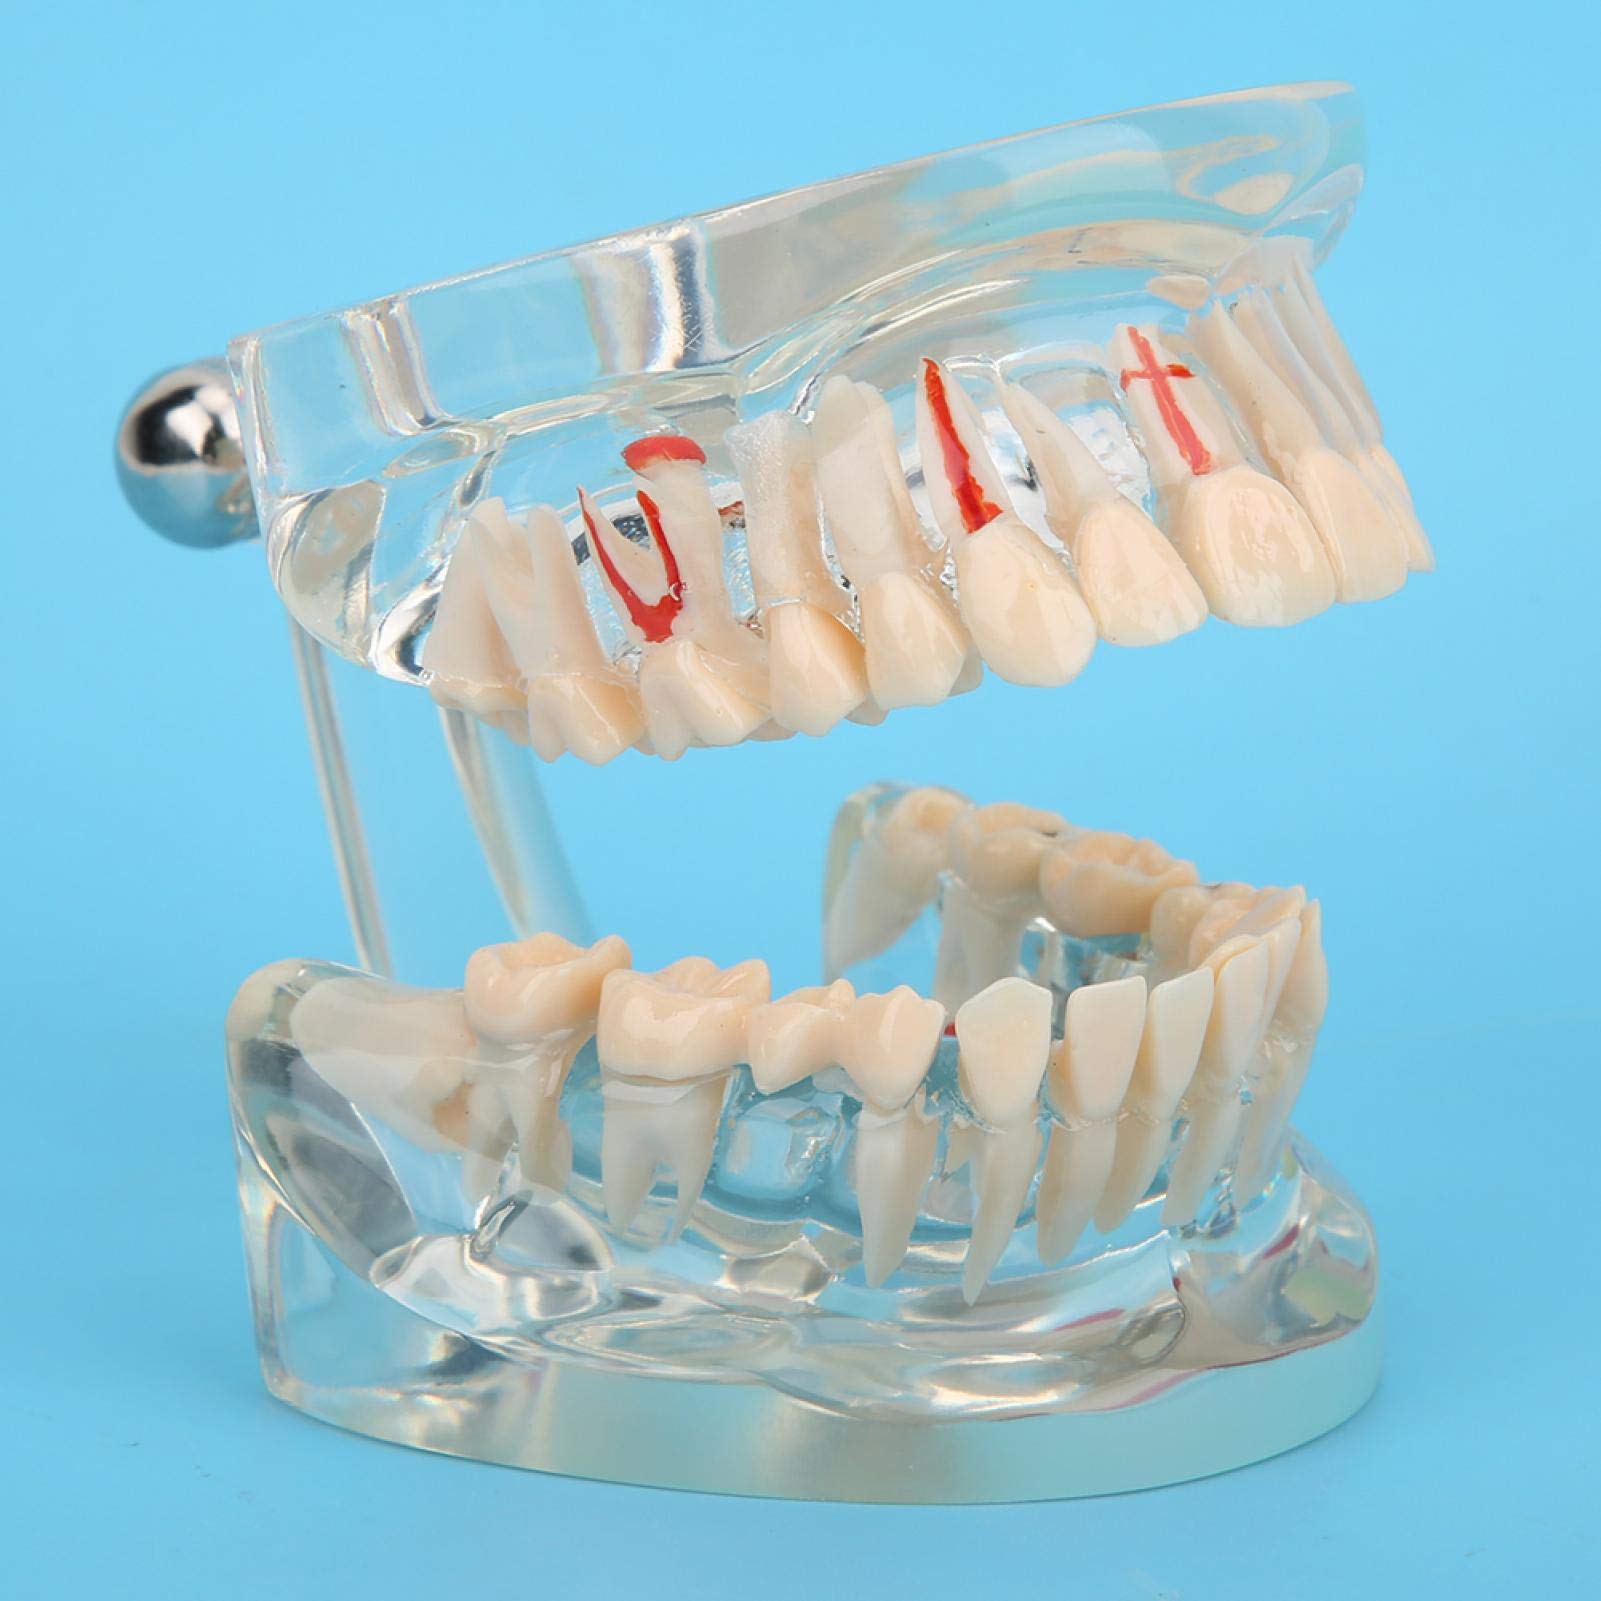 Standard-Zähne-Modell für Erwachsene mit hoher Präzision. Weit verbreitet für die Bildung von Arbeitskollegen.